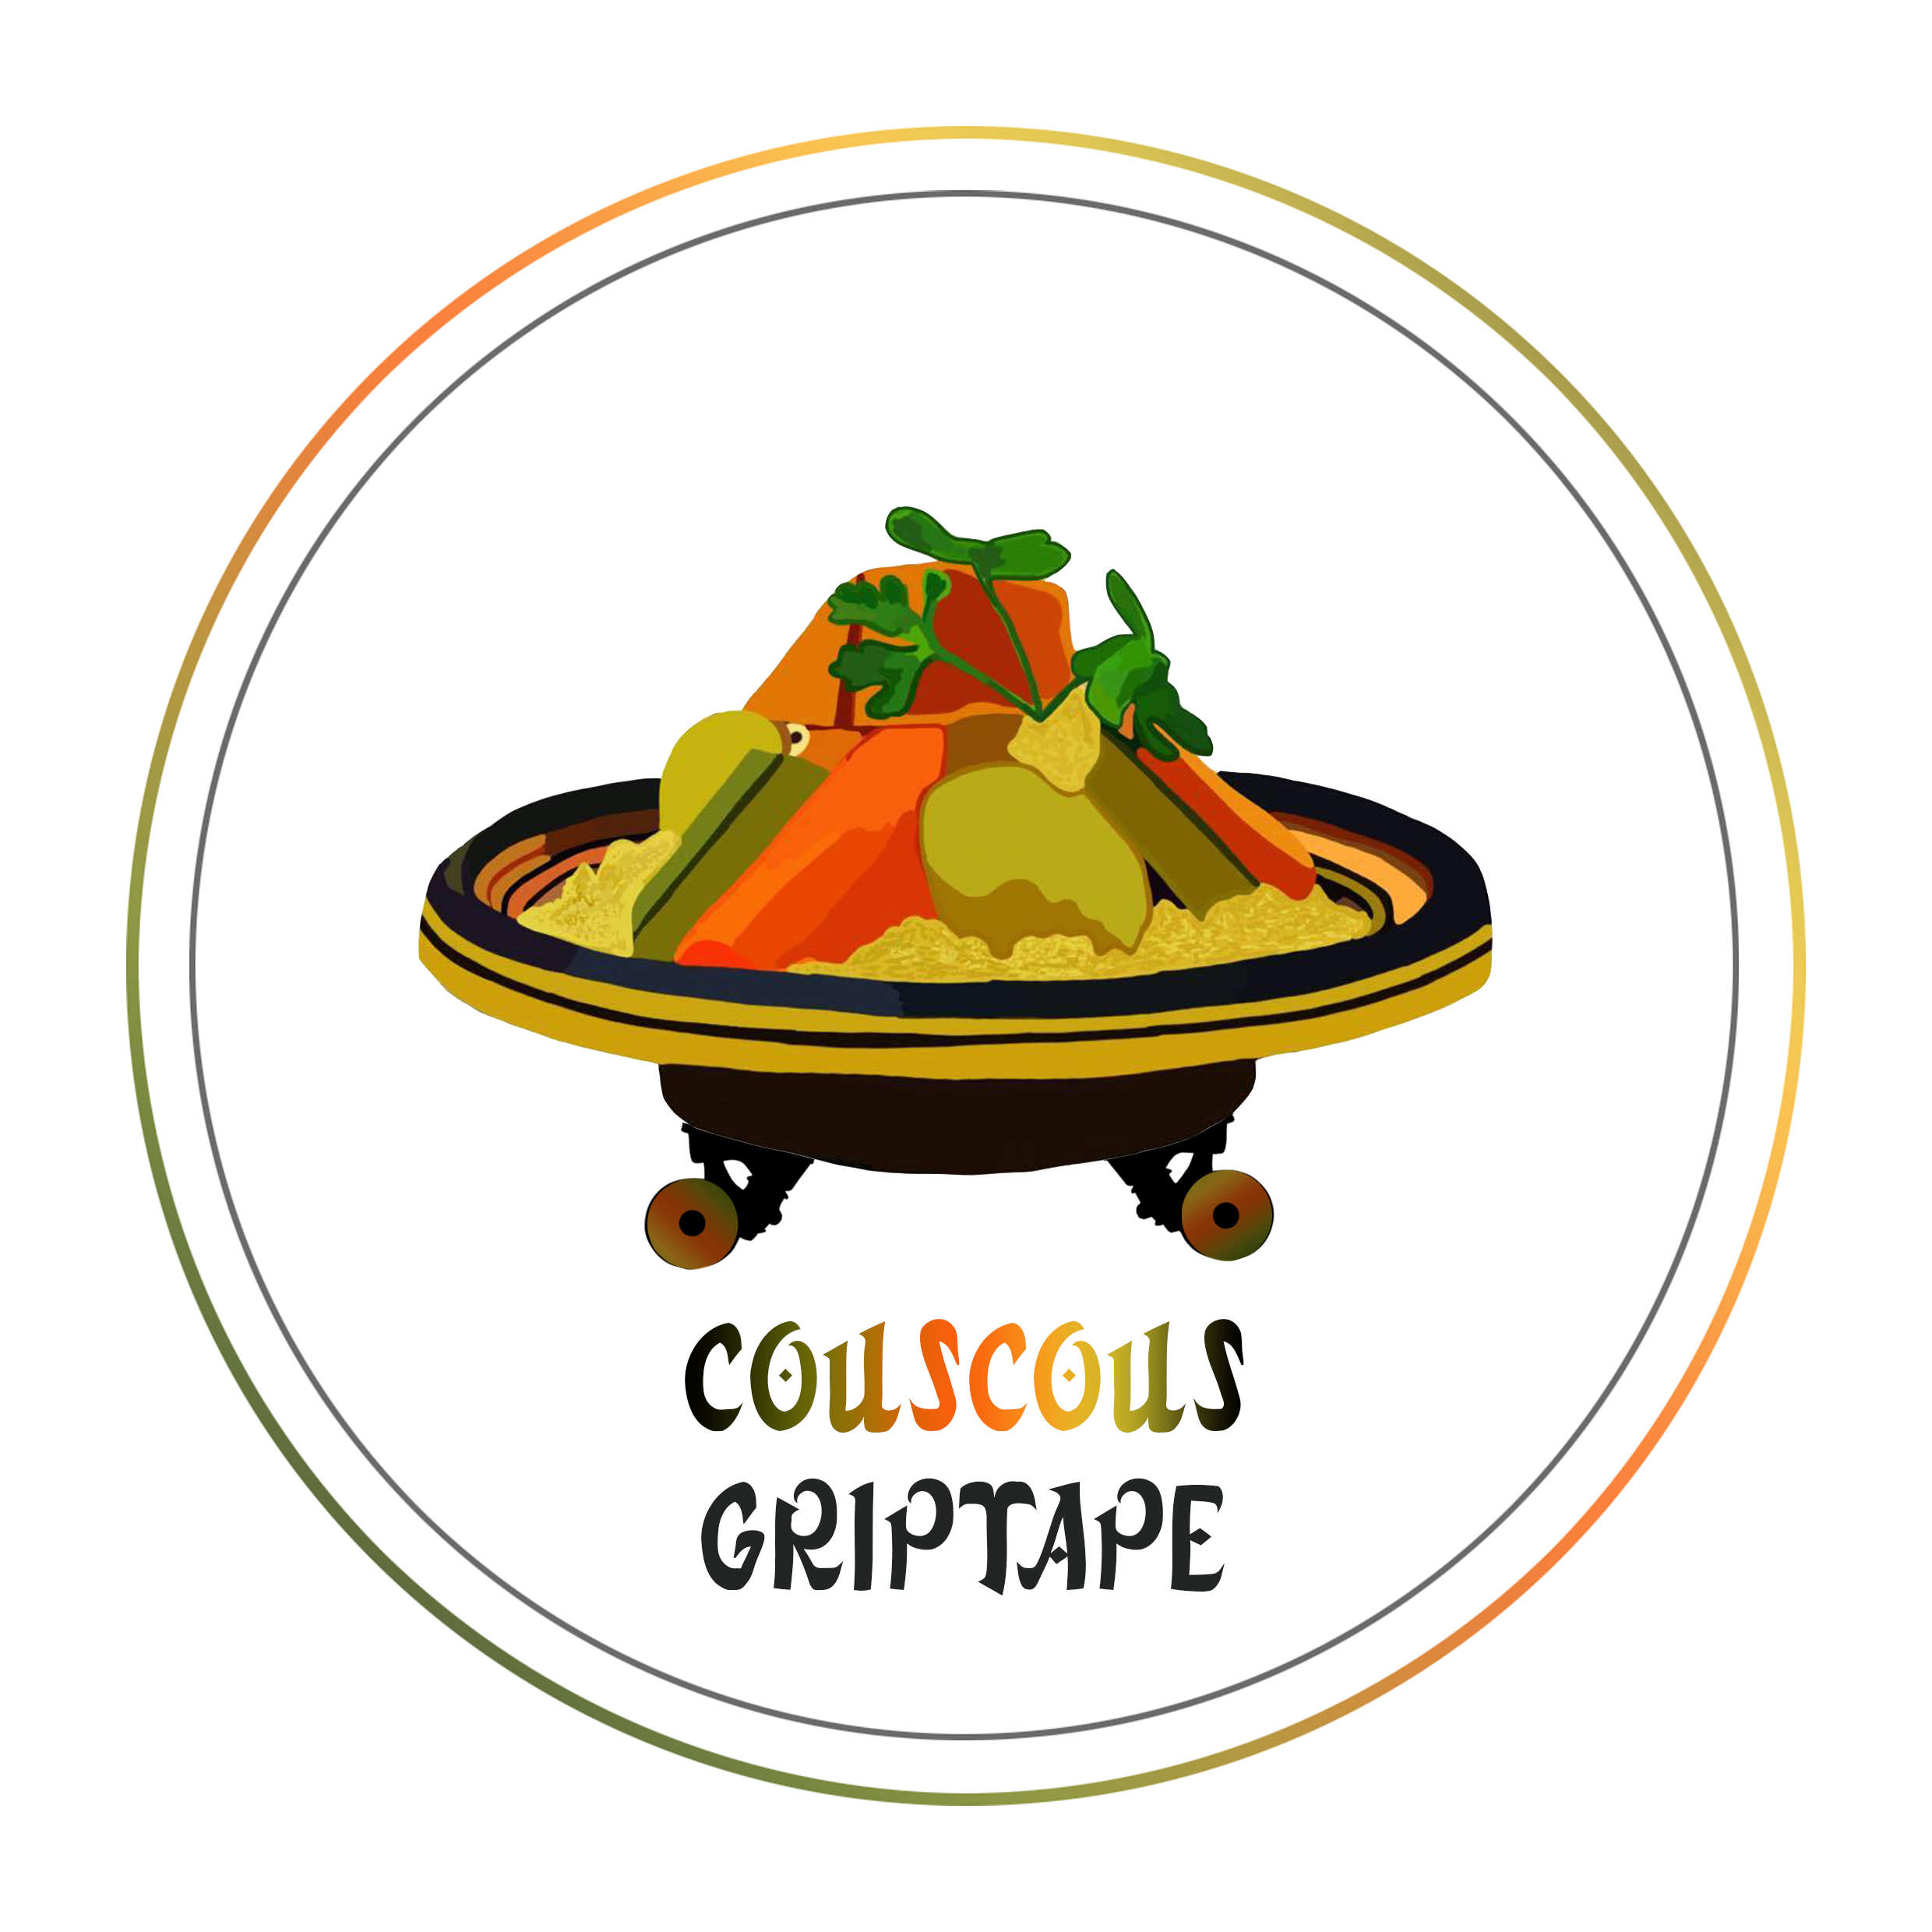 Couscous Griptape